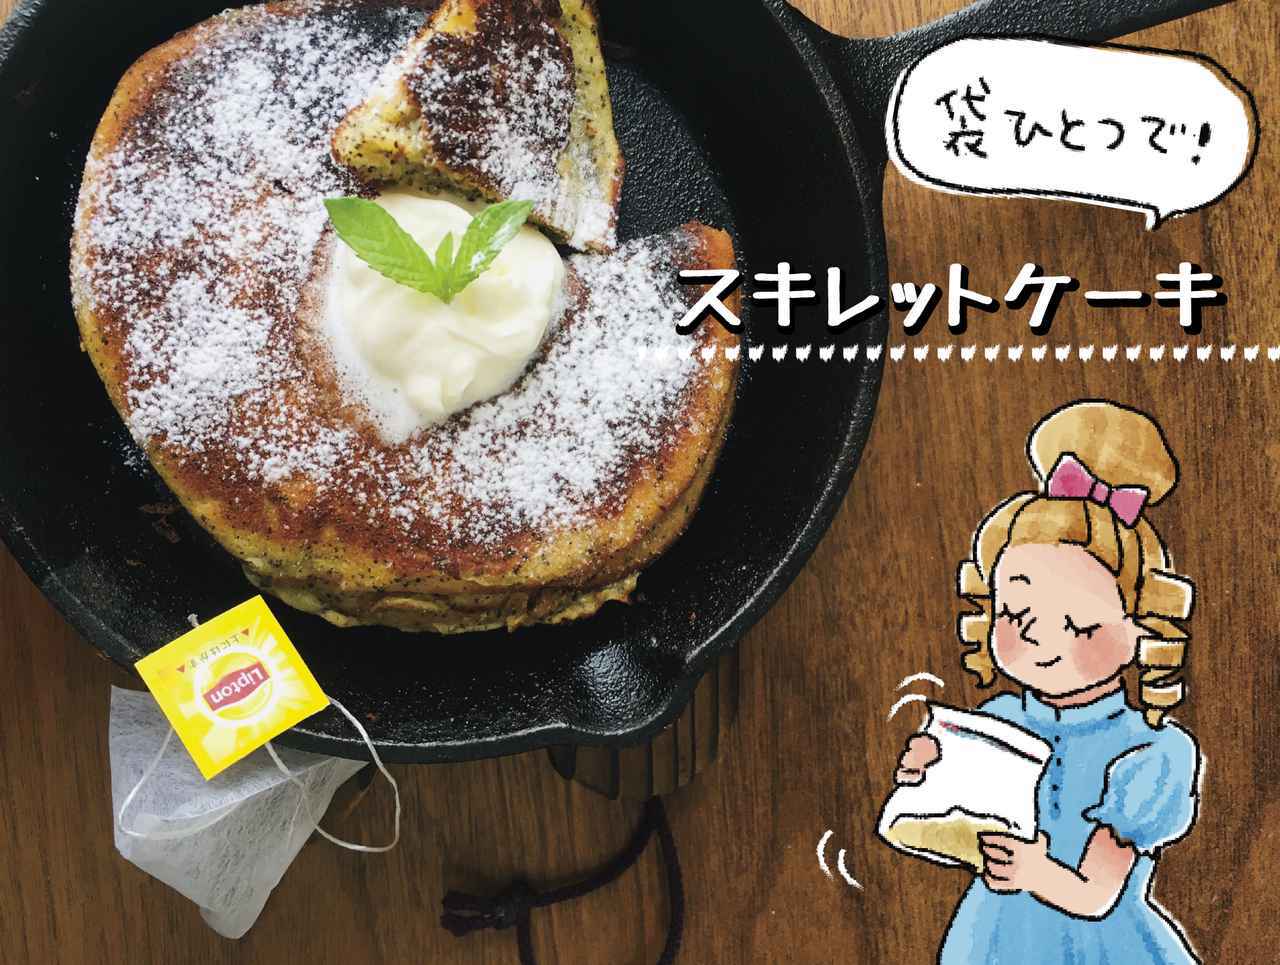 スキレットレシピ キャンプにおすすめ 袋ひとつで簡単にできるケーキレシピ3選 お役立ちキャンプ情報 年06月19日 日本気象協会 Tenki Jp